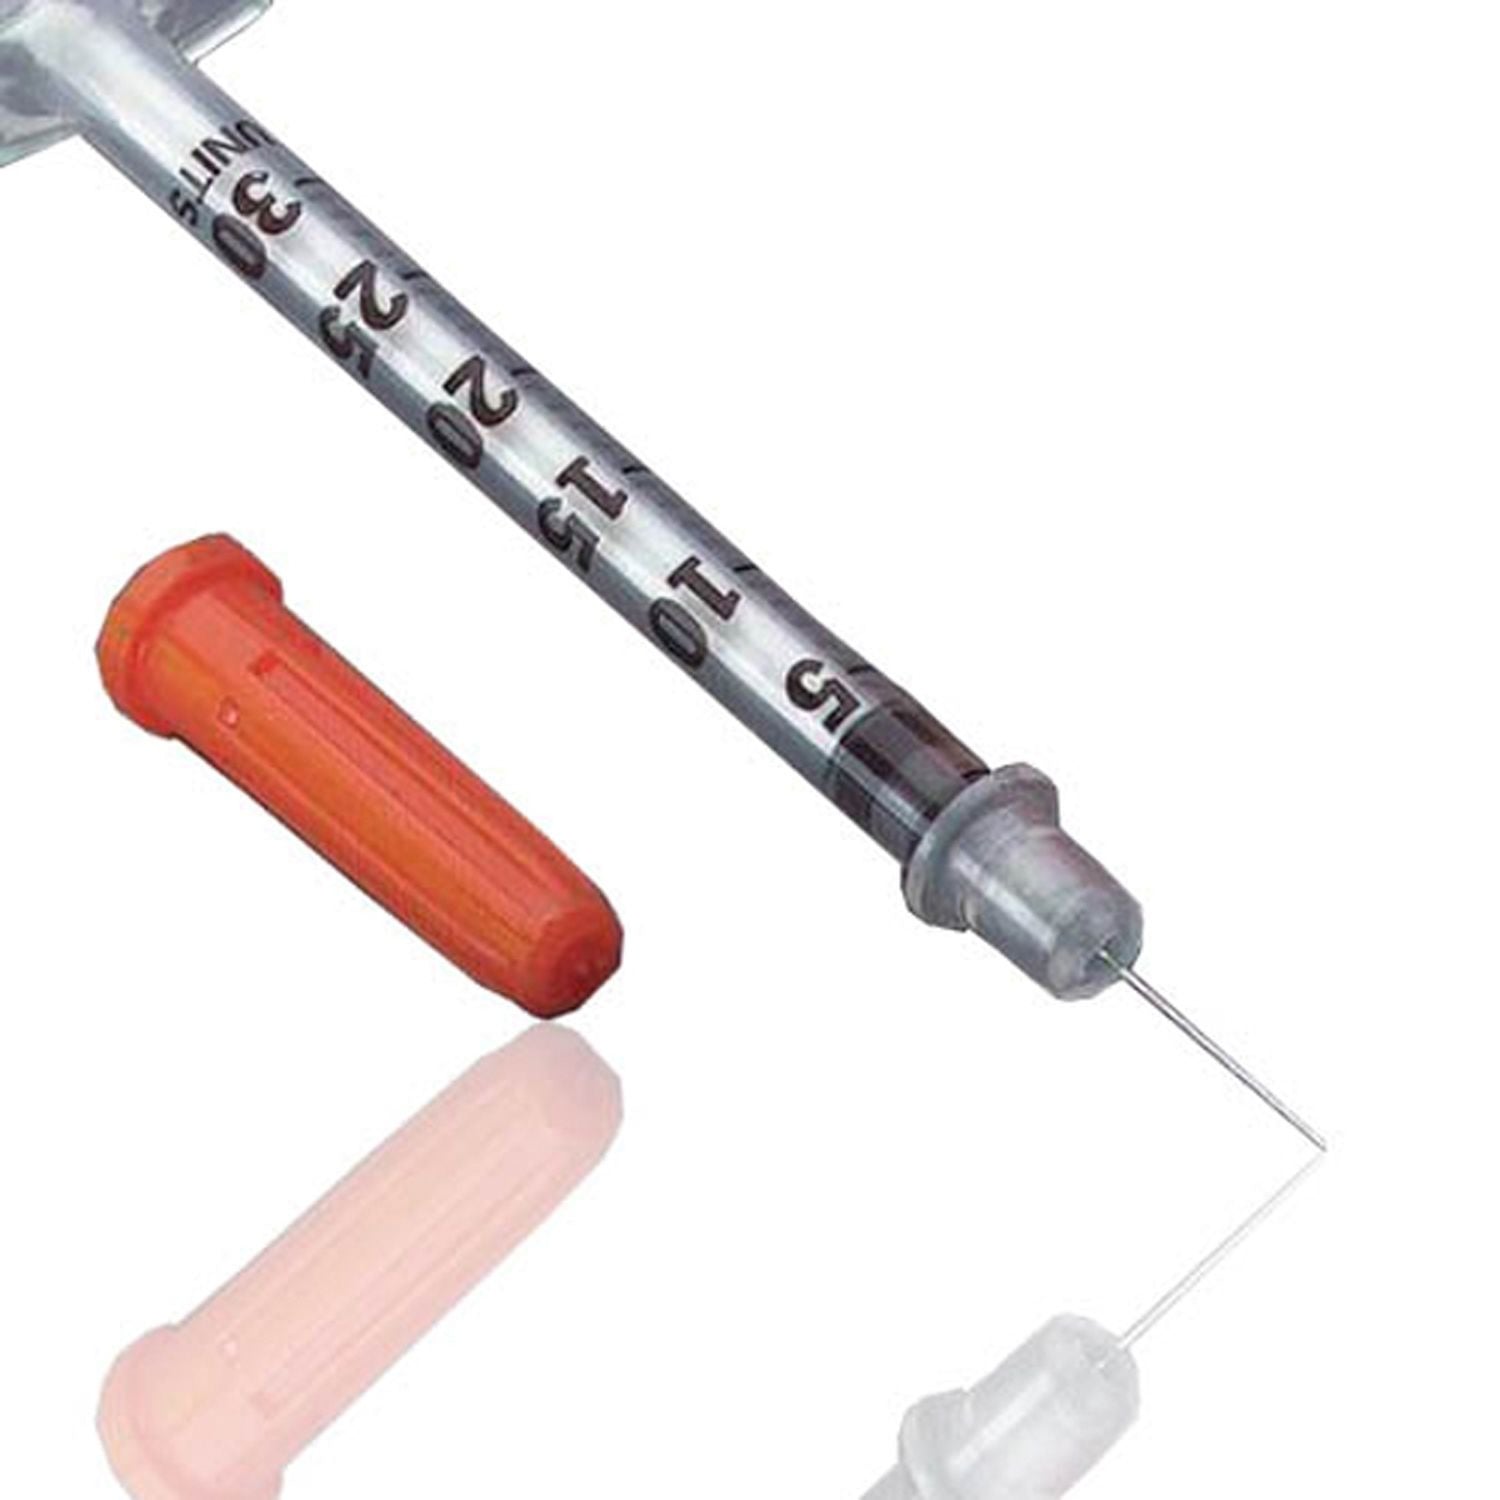 BD Microfine Insulin Syringe | 30G x 0.5ml | Short | Pack of 200 (1)